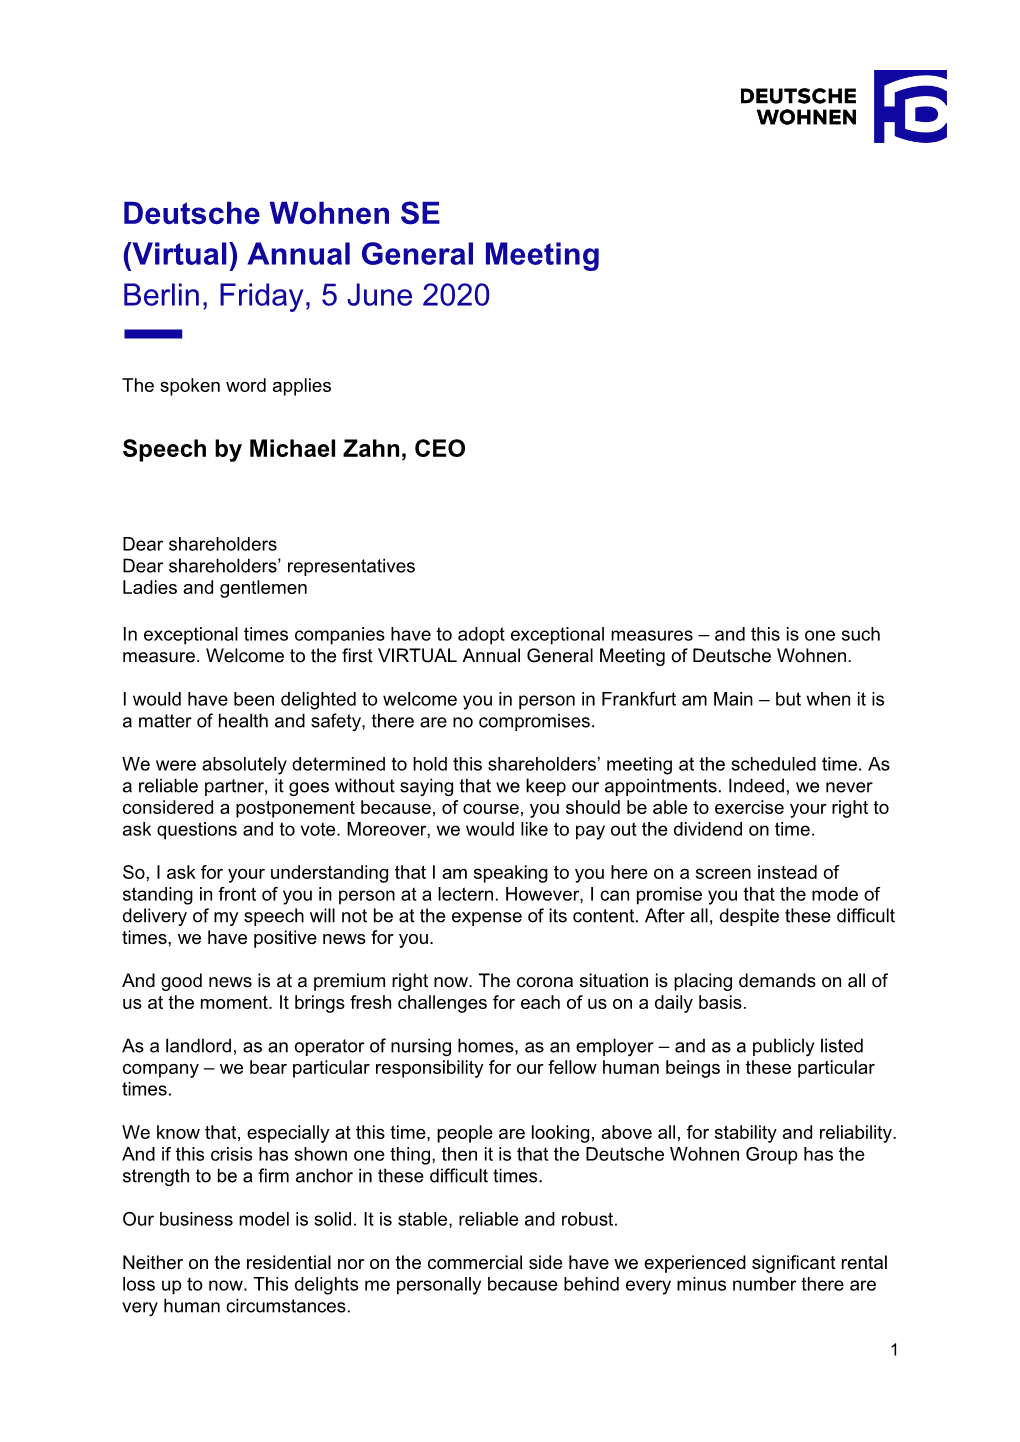 Deutsche Wohnen SE (Virtual) Annual General Meeting Berlin, Friday, 5 June 2020